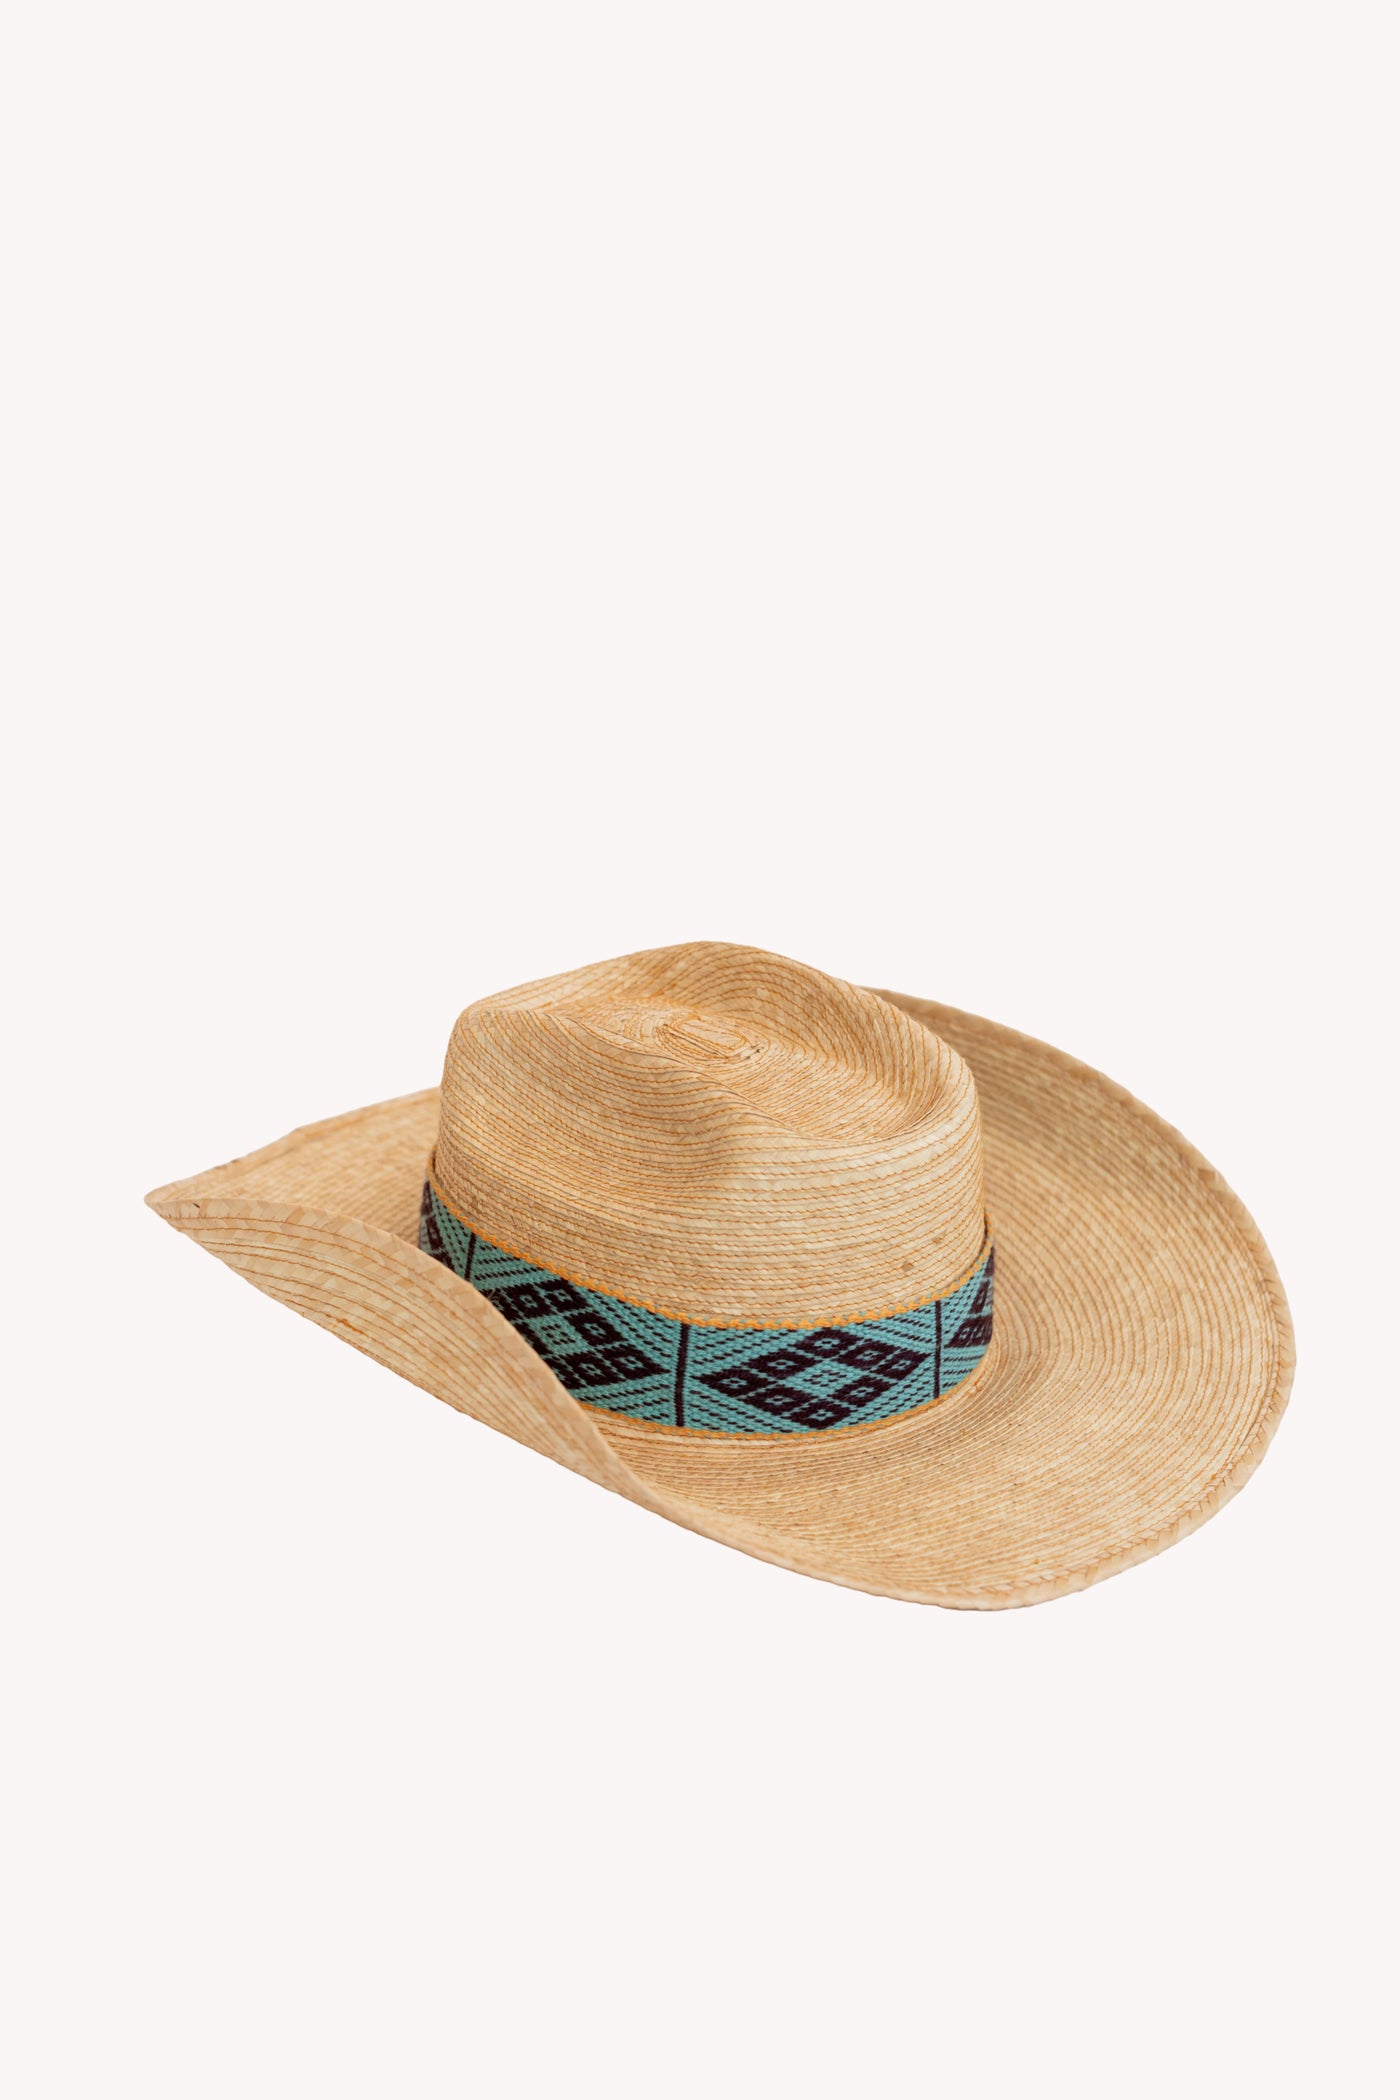 Straw Gaucho style palm leaf rancho hat